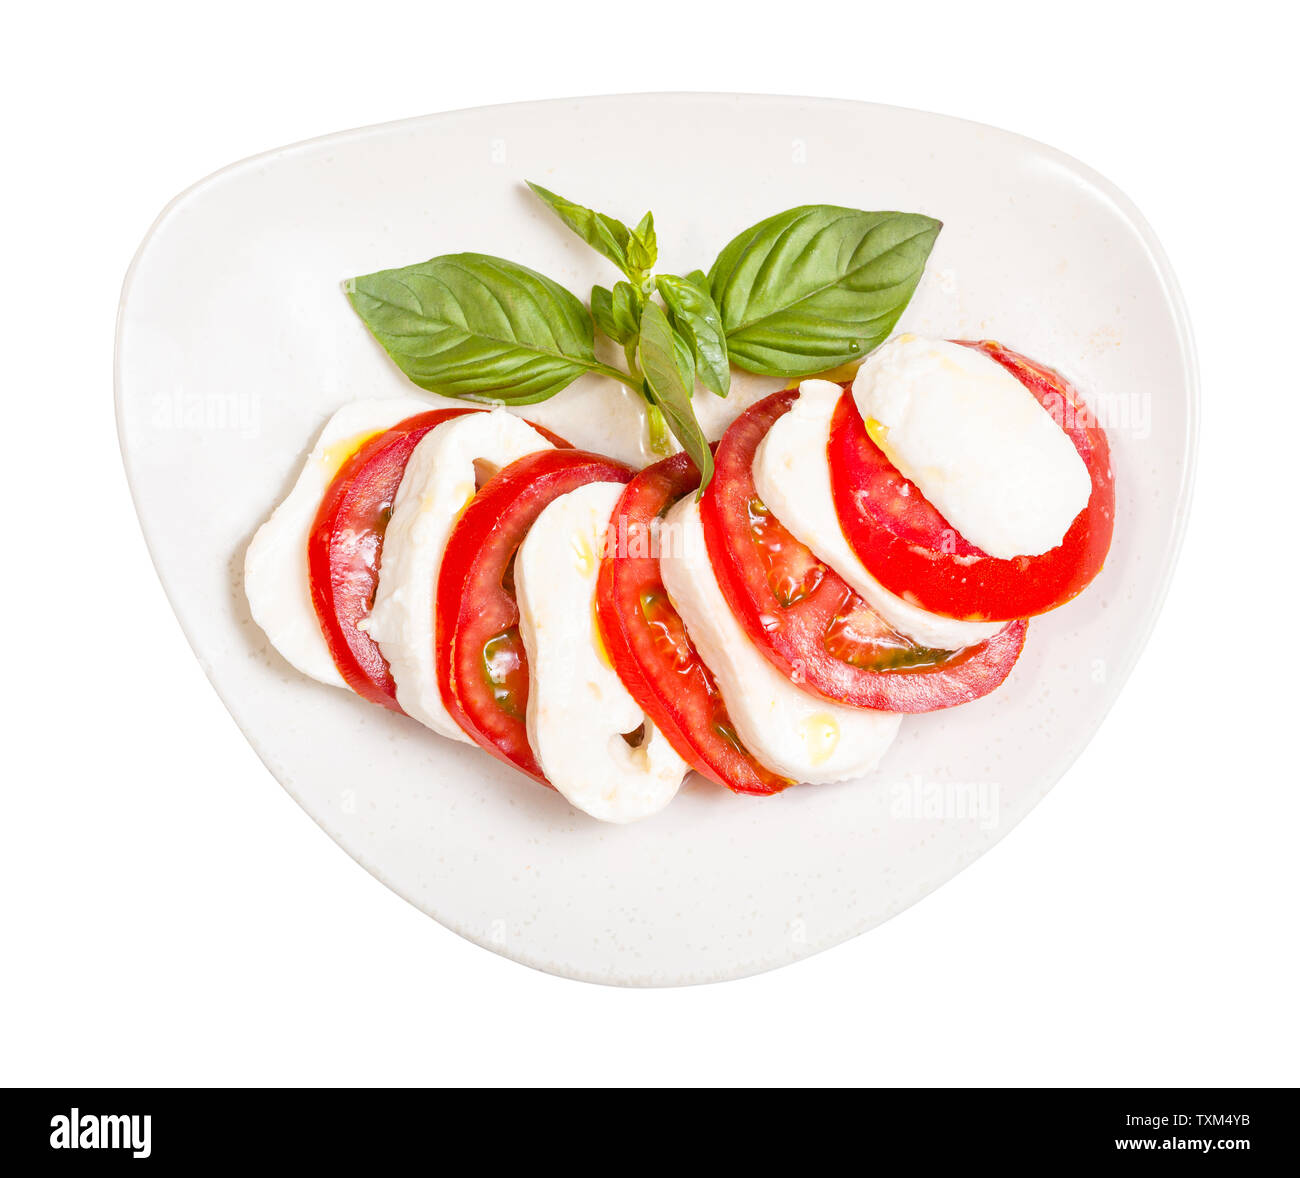 Italienische Küche Insalata Caprese (Caprese) - Blick von oben auf die in Scheiben geschnittenen Mozzarella und Tomaten mit Basilikum Zweig, gewürzt durch Olivenöl auf Platte isol Stockfoto